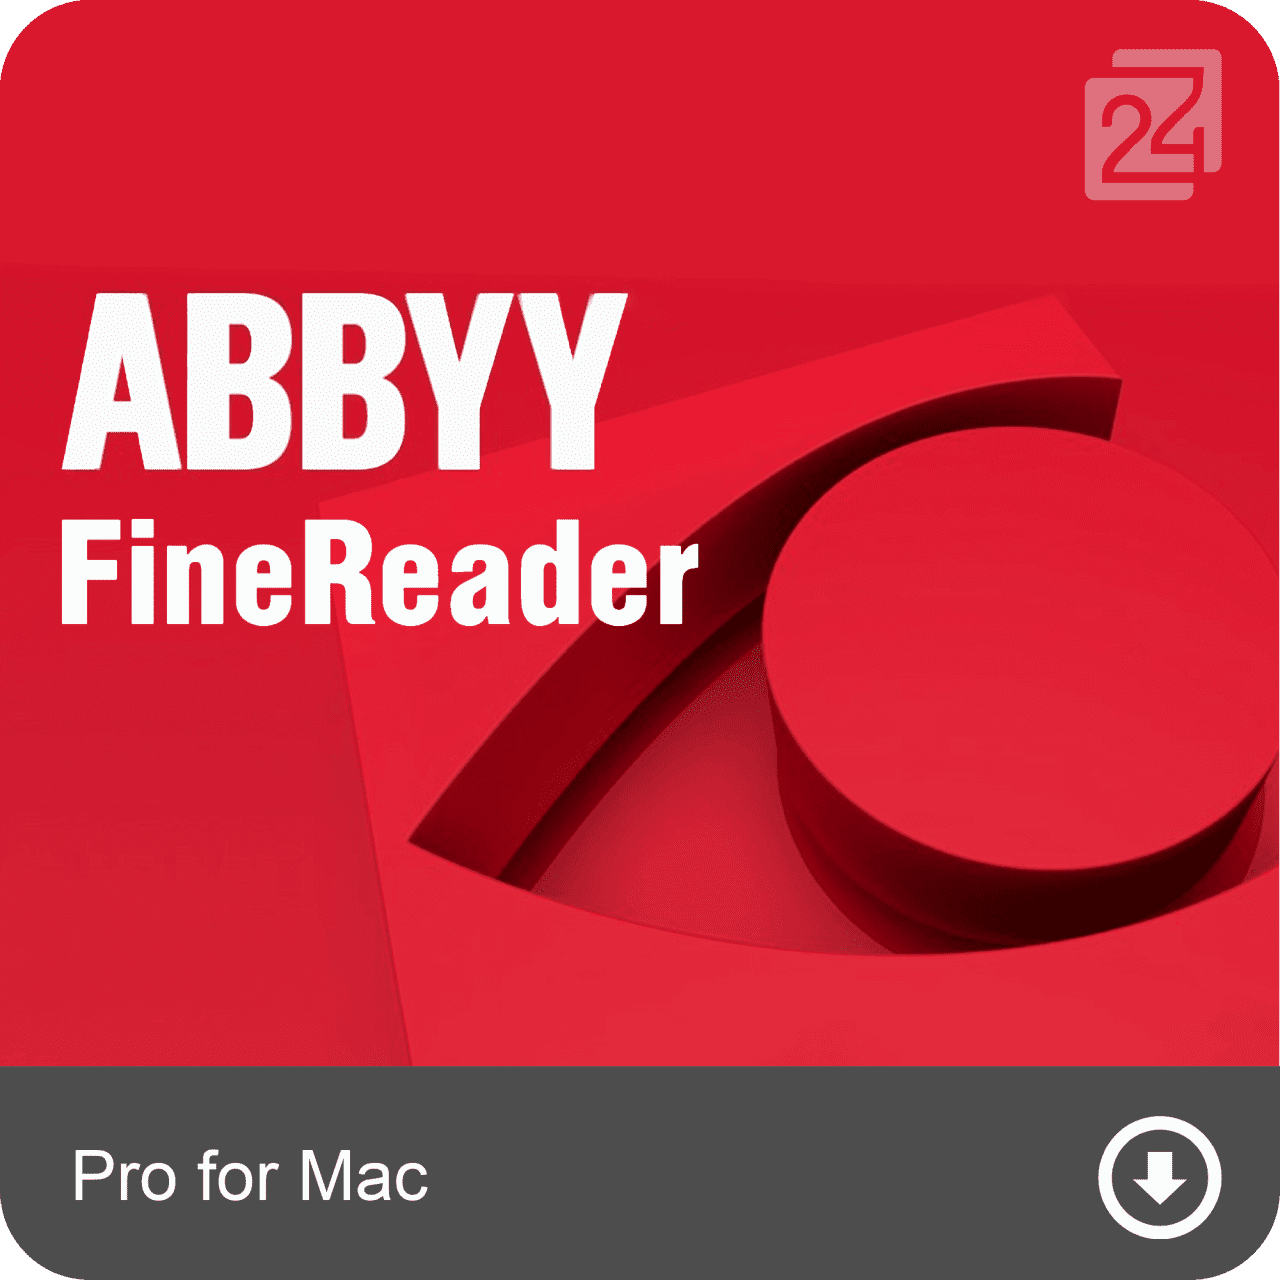 ABBYY FineReader Pro, 1 User, MAC, Full Version, Download